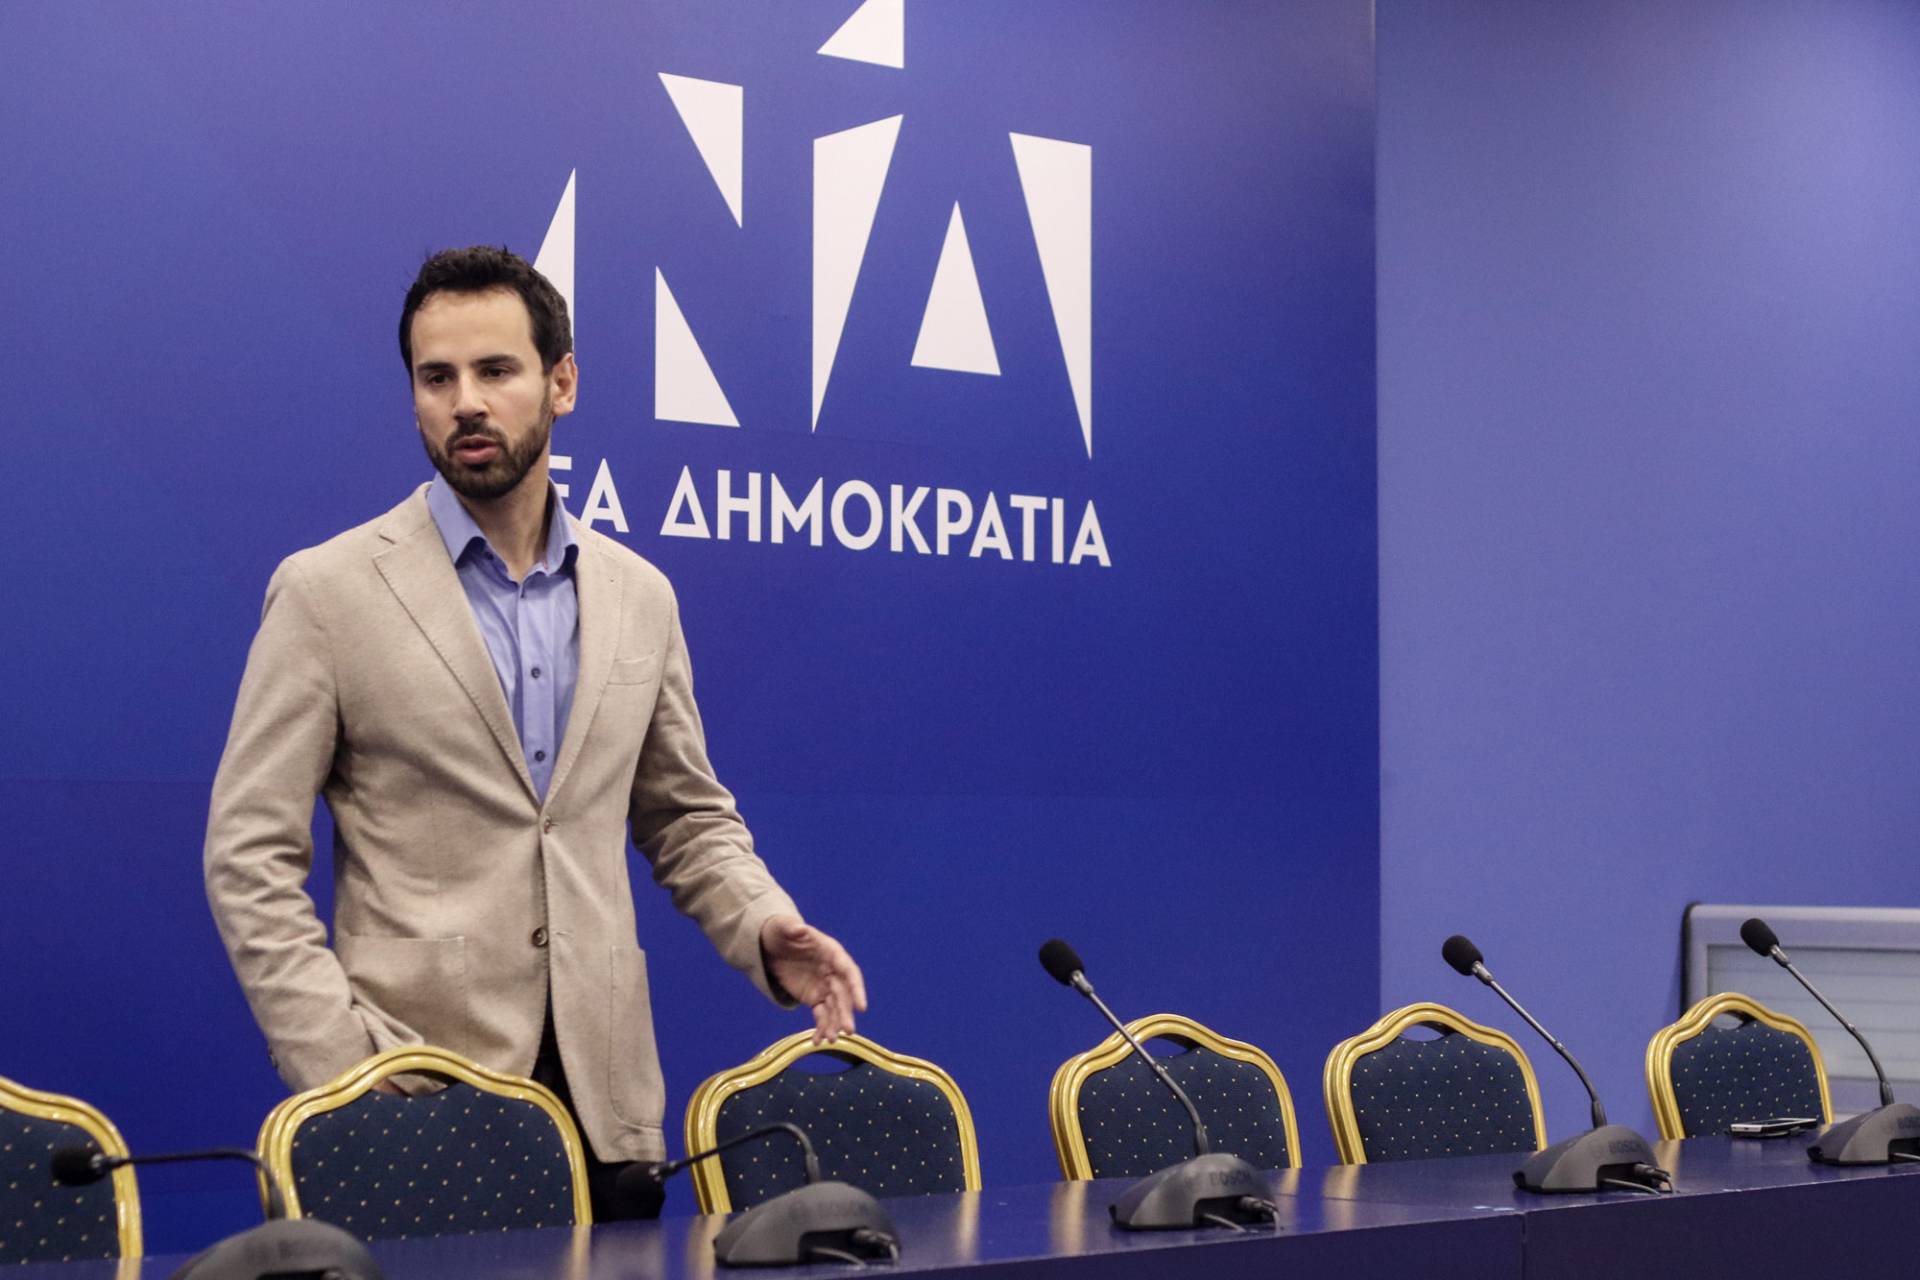 Ν. Ρωμανός: Περιμένουμε απαντήσεις από τον ΣΥΡΙΖΑ για τις αποκαλύψεις Σκουρλέτη περί μηχανισμού γύρω από τον Αλ. Τσίπρα  (audio)